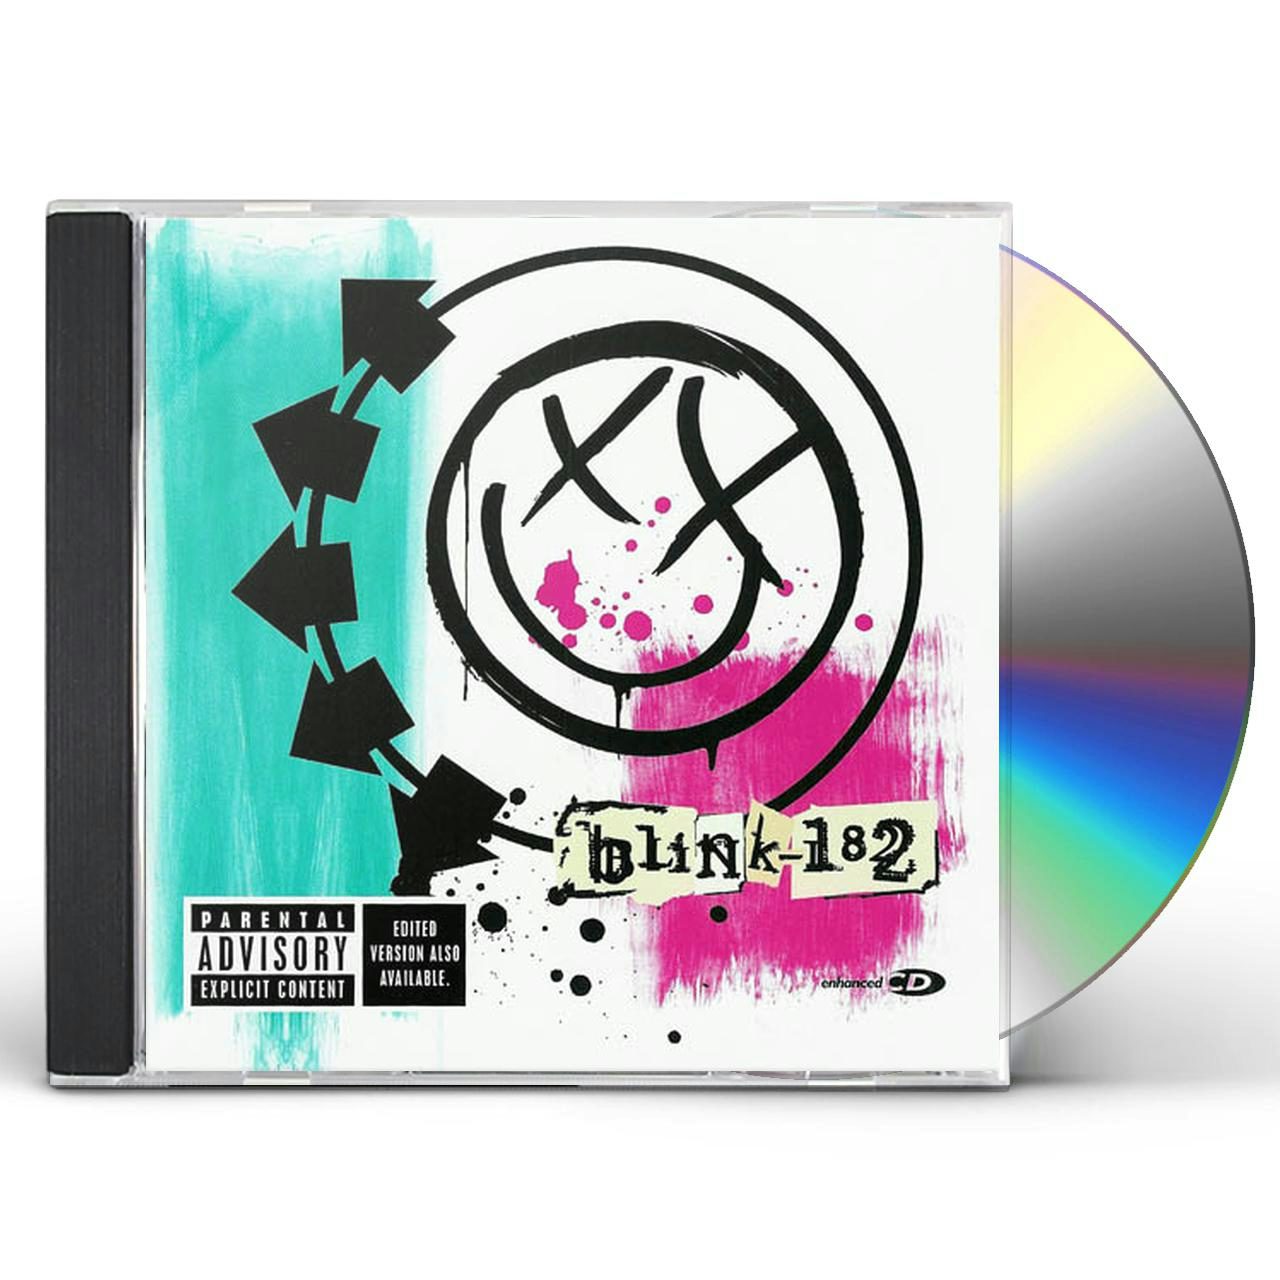 CD - blink-182